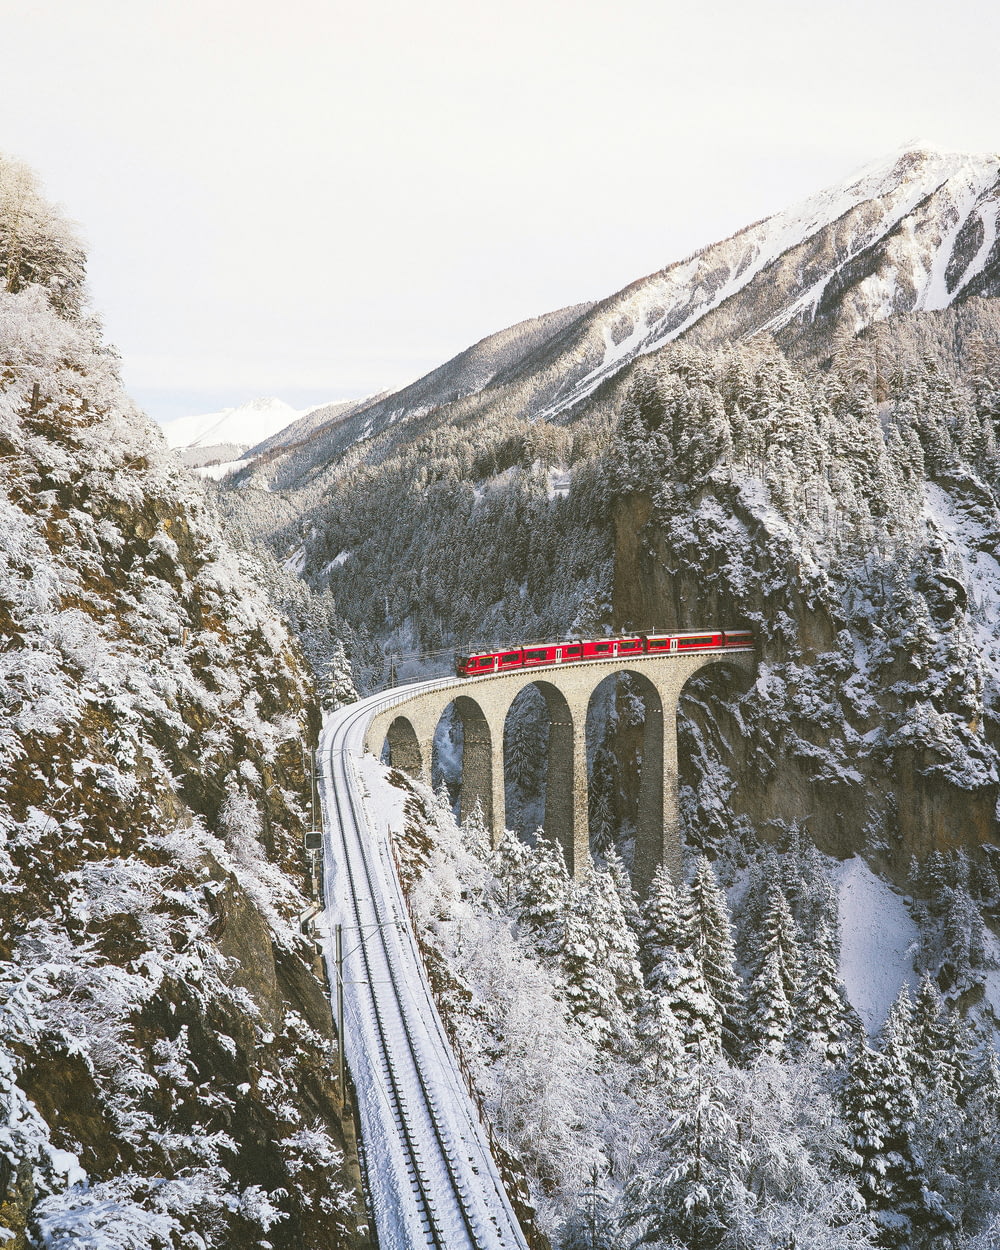 Annäherung an den roten Zug über Berge